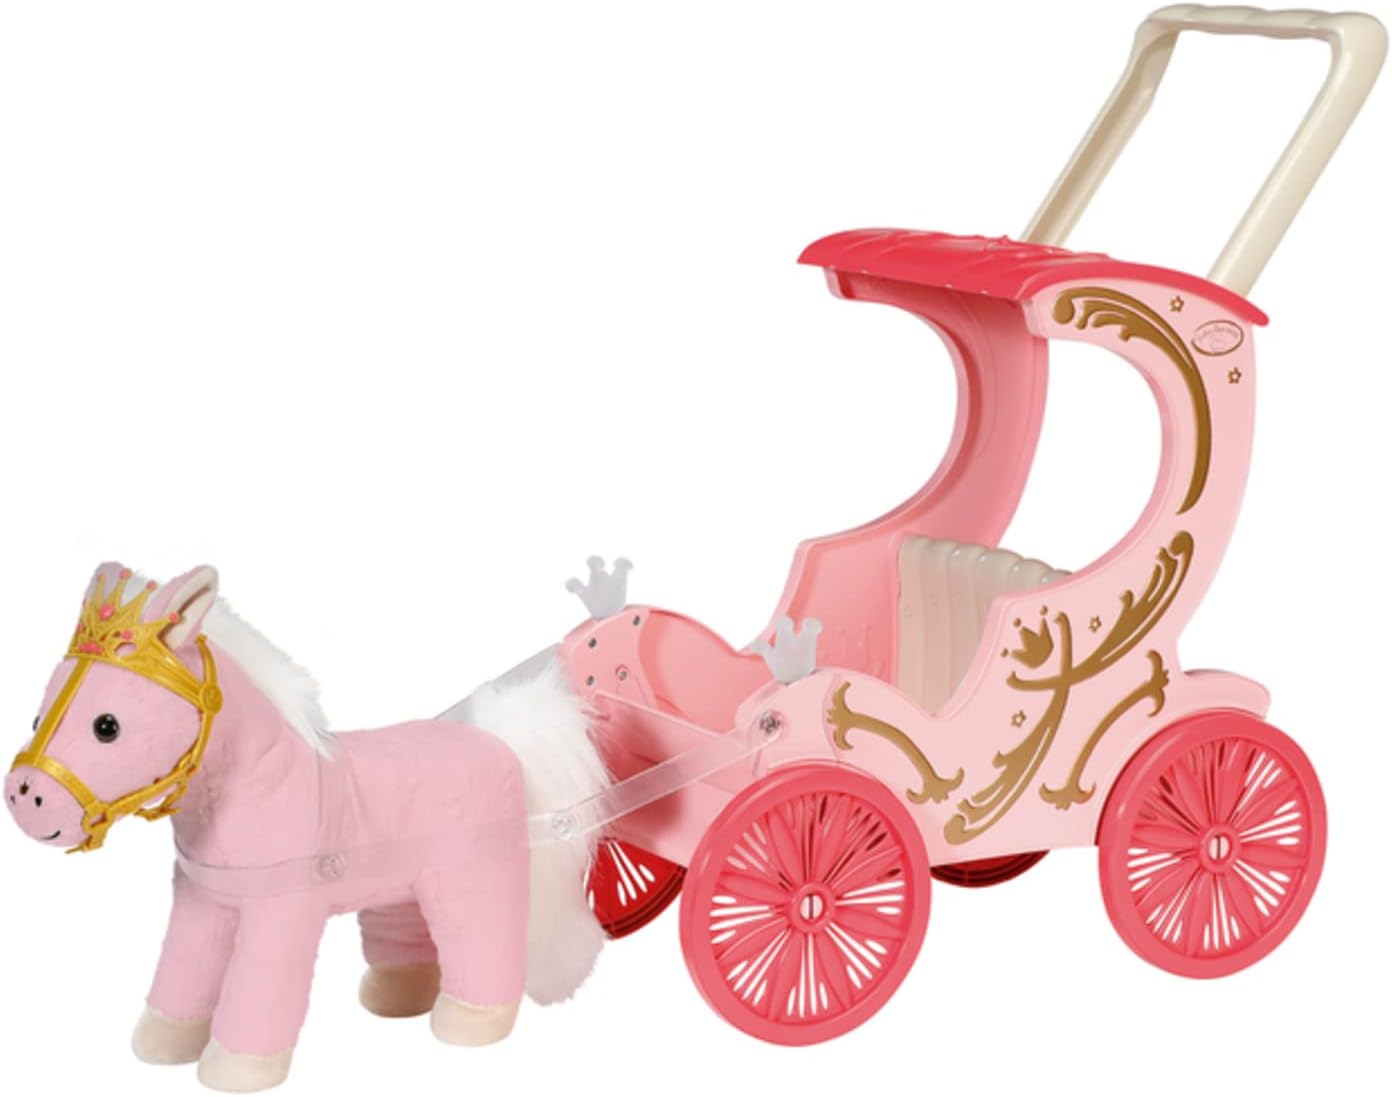 Zapf Creation 707210 Baby Annabell Little Sweet Kutsche und Pony 2-in-1 Puppenwagen Kutsche Plüschpony Puppenkutsche Spielzeugkutsche Puppenzubehör Puppenwagen